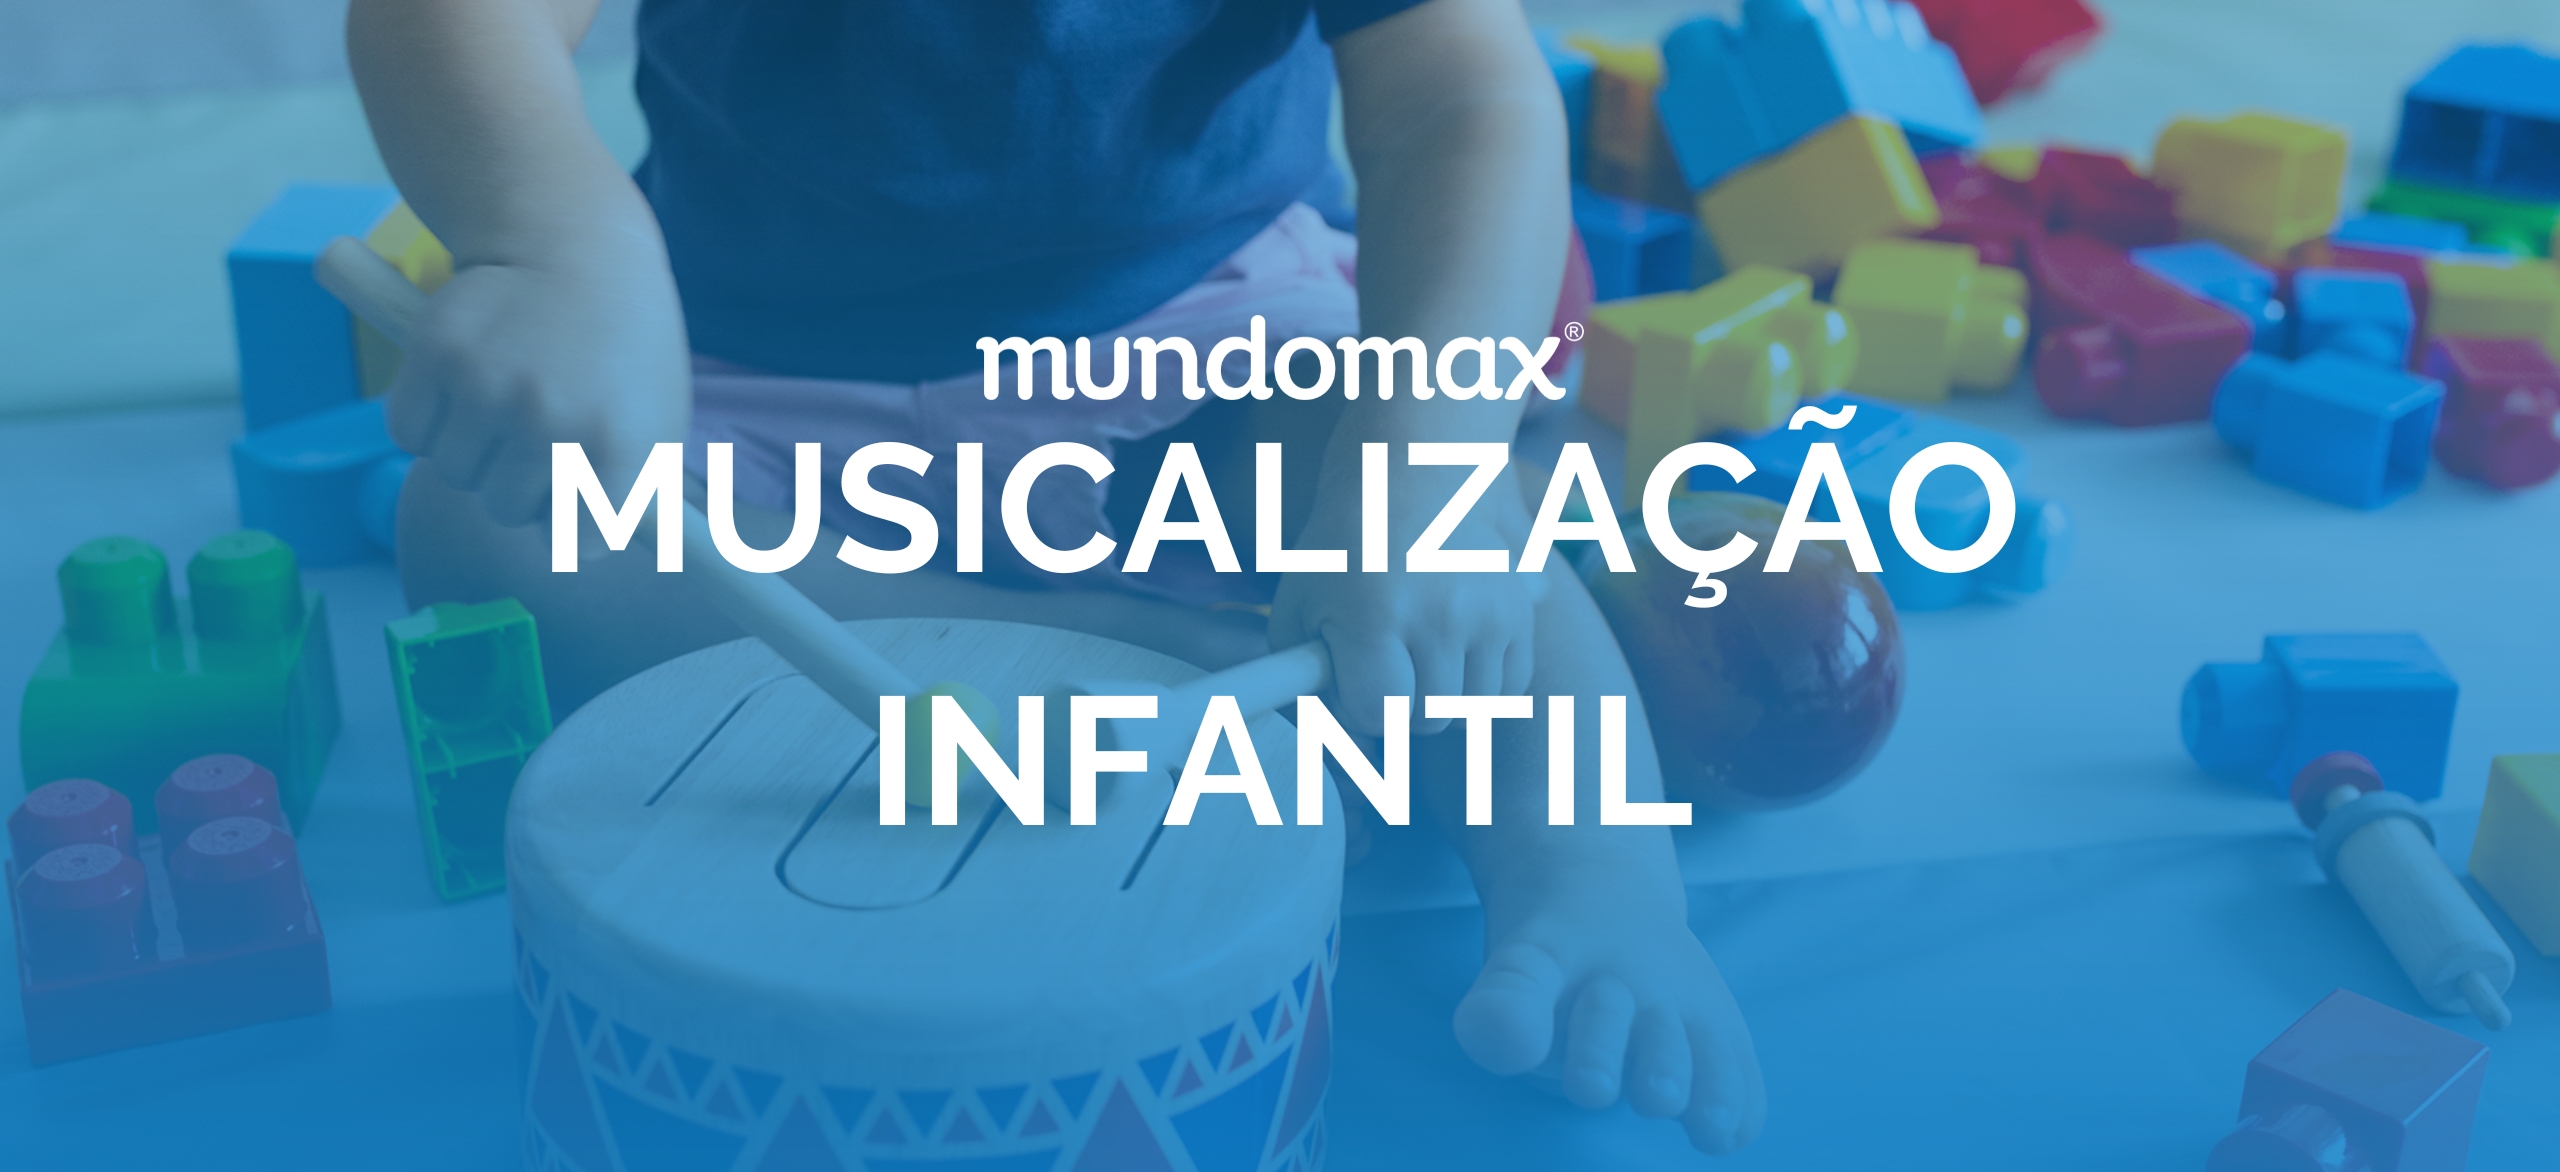 Musicalização infantil: instrumentos musicais para crianças 